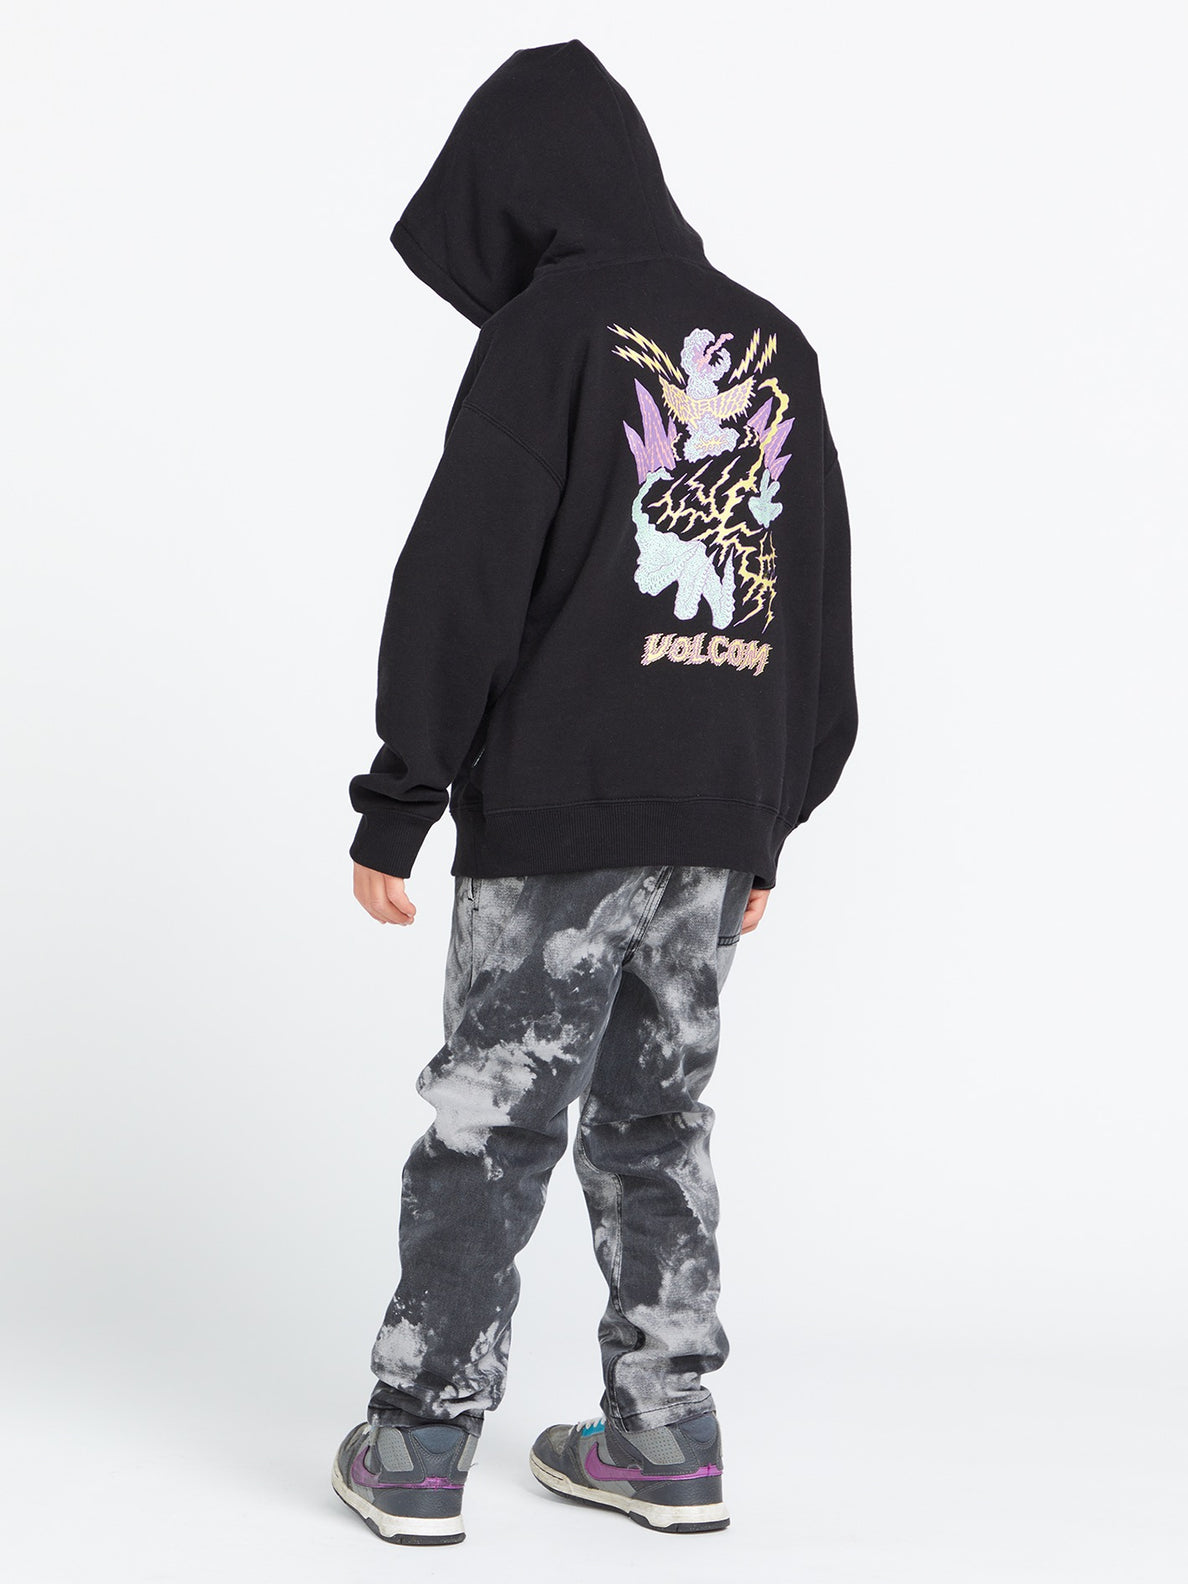 Little Boys Featured Artist Tetsunori Sweatshirt - Black